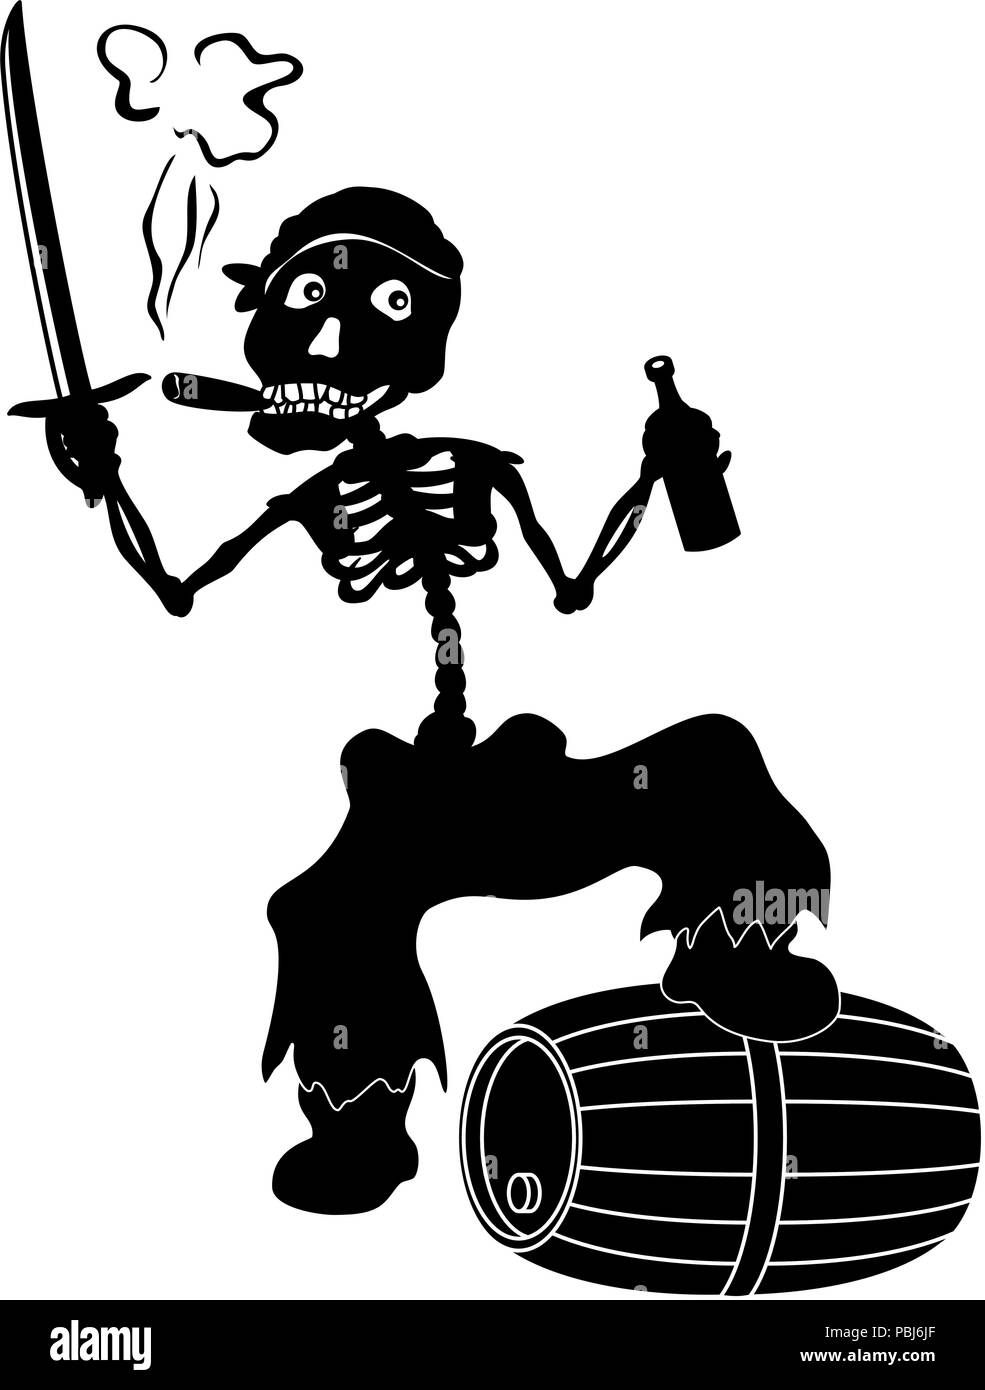 Jolly Roger skeleton, black silhouettes Stock Vector